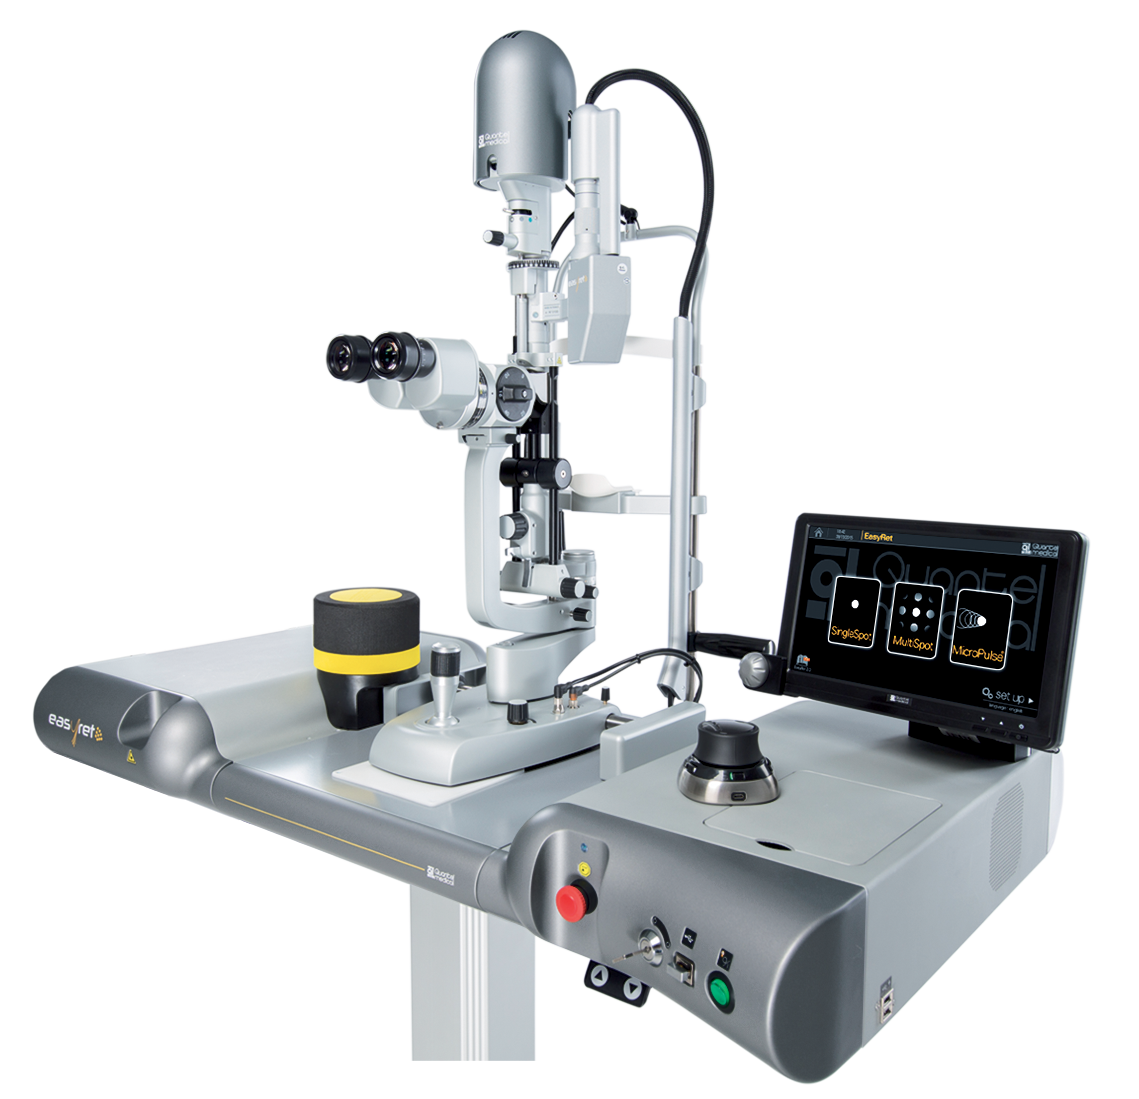 Желтый (577 нм) лазер офтальмологический EasyRet с паттерн-системой